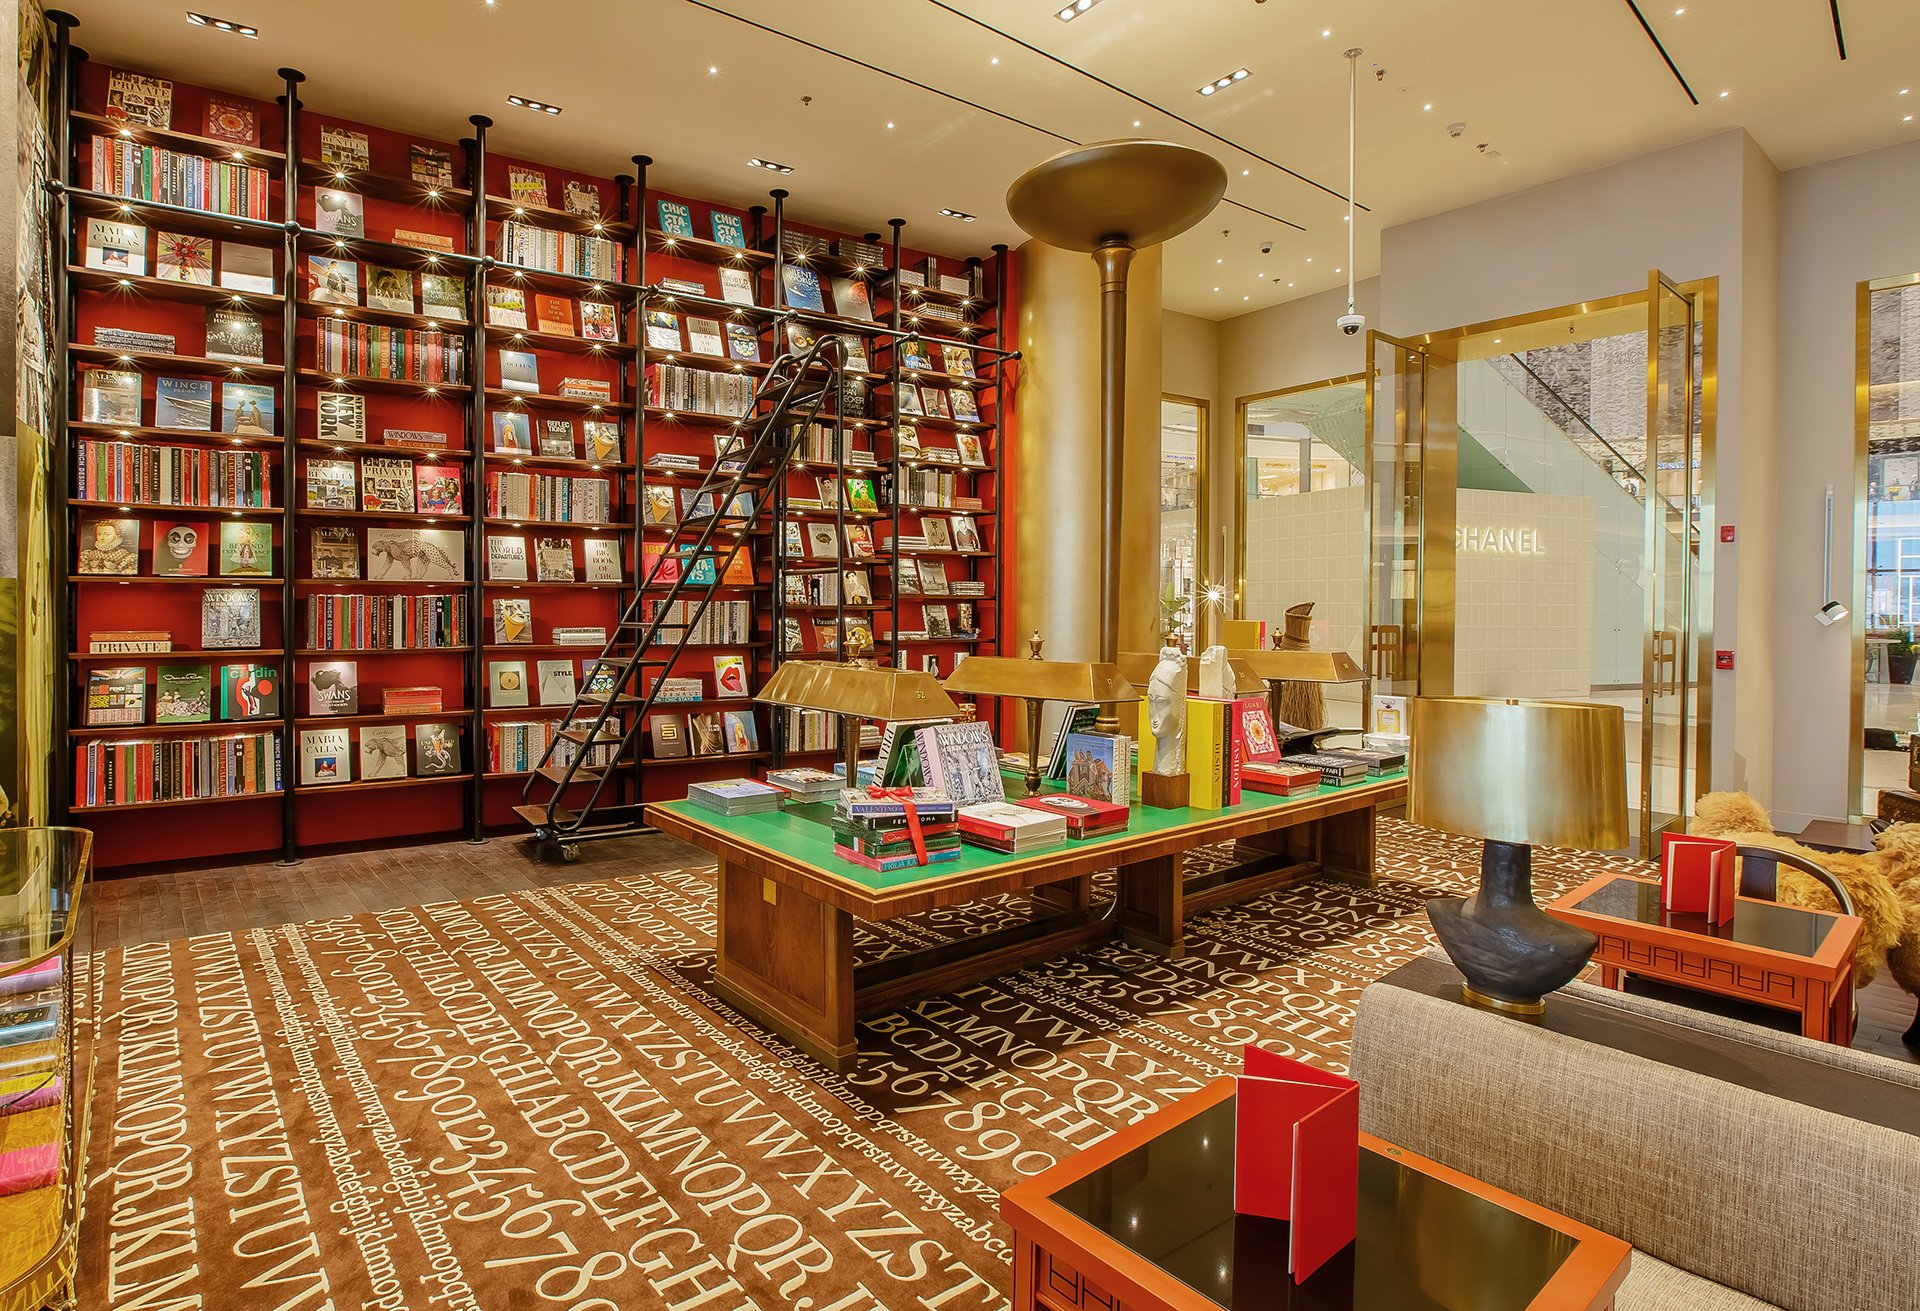 Maison Assouline Flagship Store, Dubai - Retail Store/Shop Interior Design  on Love That Design